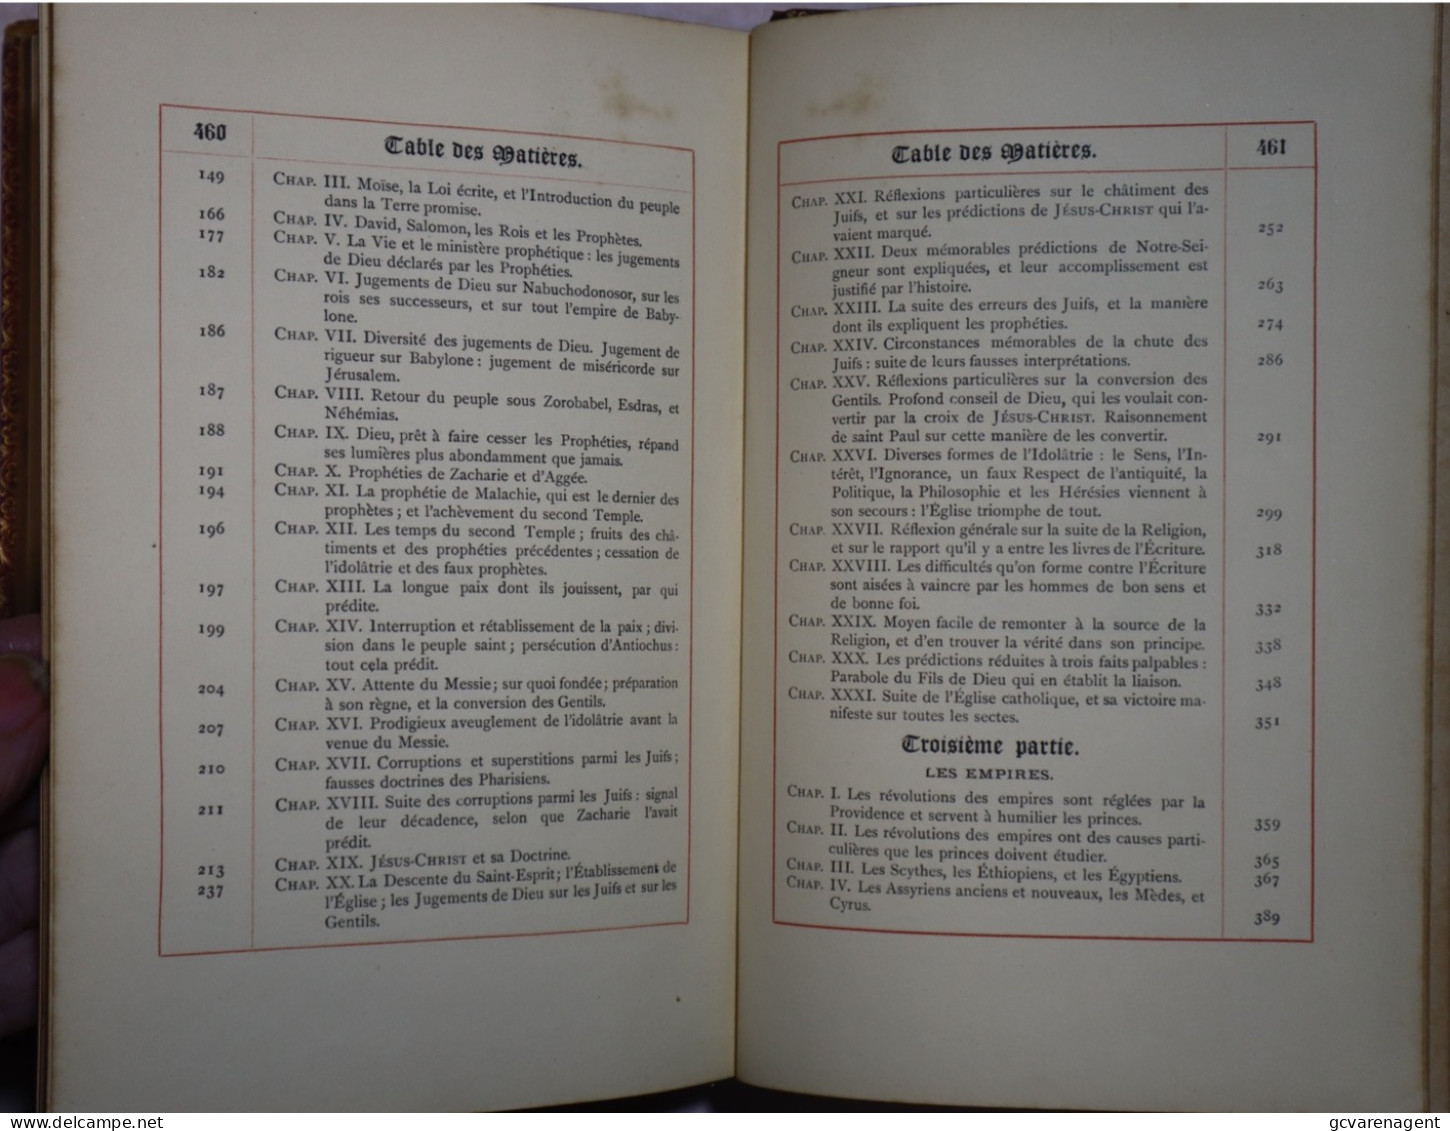 DISCOURS SUR L'HISTOIRE UNIVERSELLE 1898 PAR BOSSUET  - DESCLEE DE BROUWER  462 PAGES BON ETAT   ZIE AFBEELDINGEN